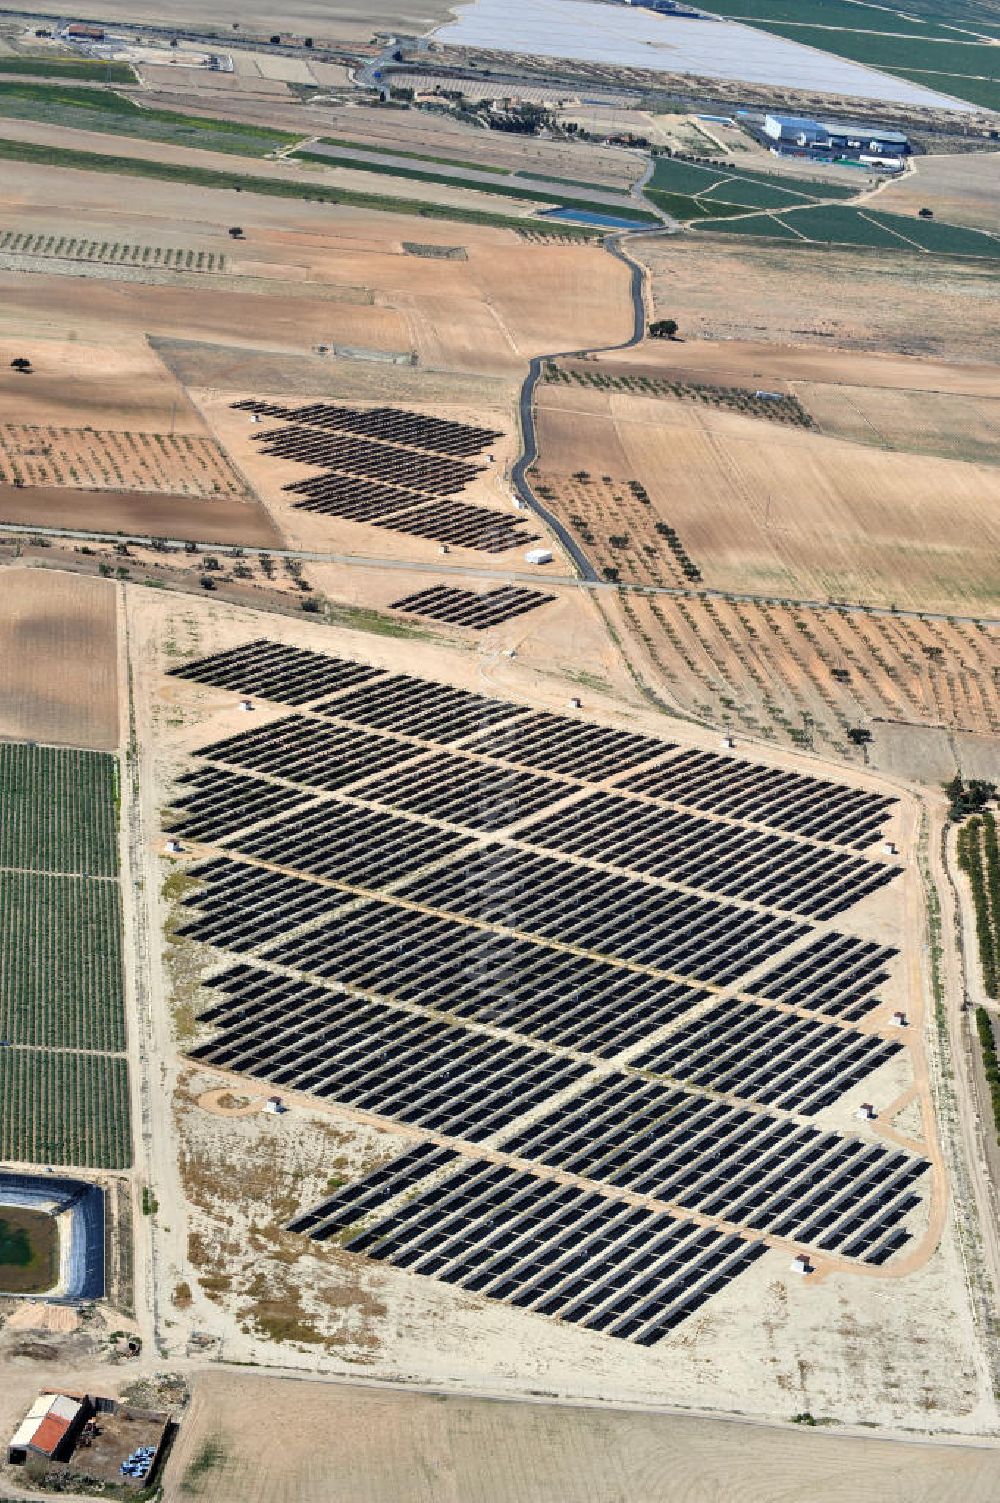 Los Martinez von oben - Solarfeld / Solarpark bei Los Martinez in der Region Murcia in Spanien